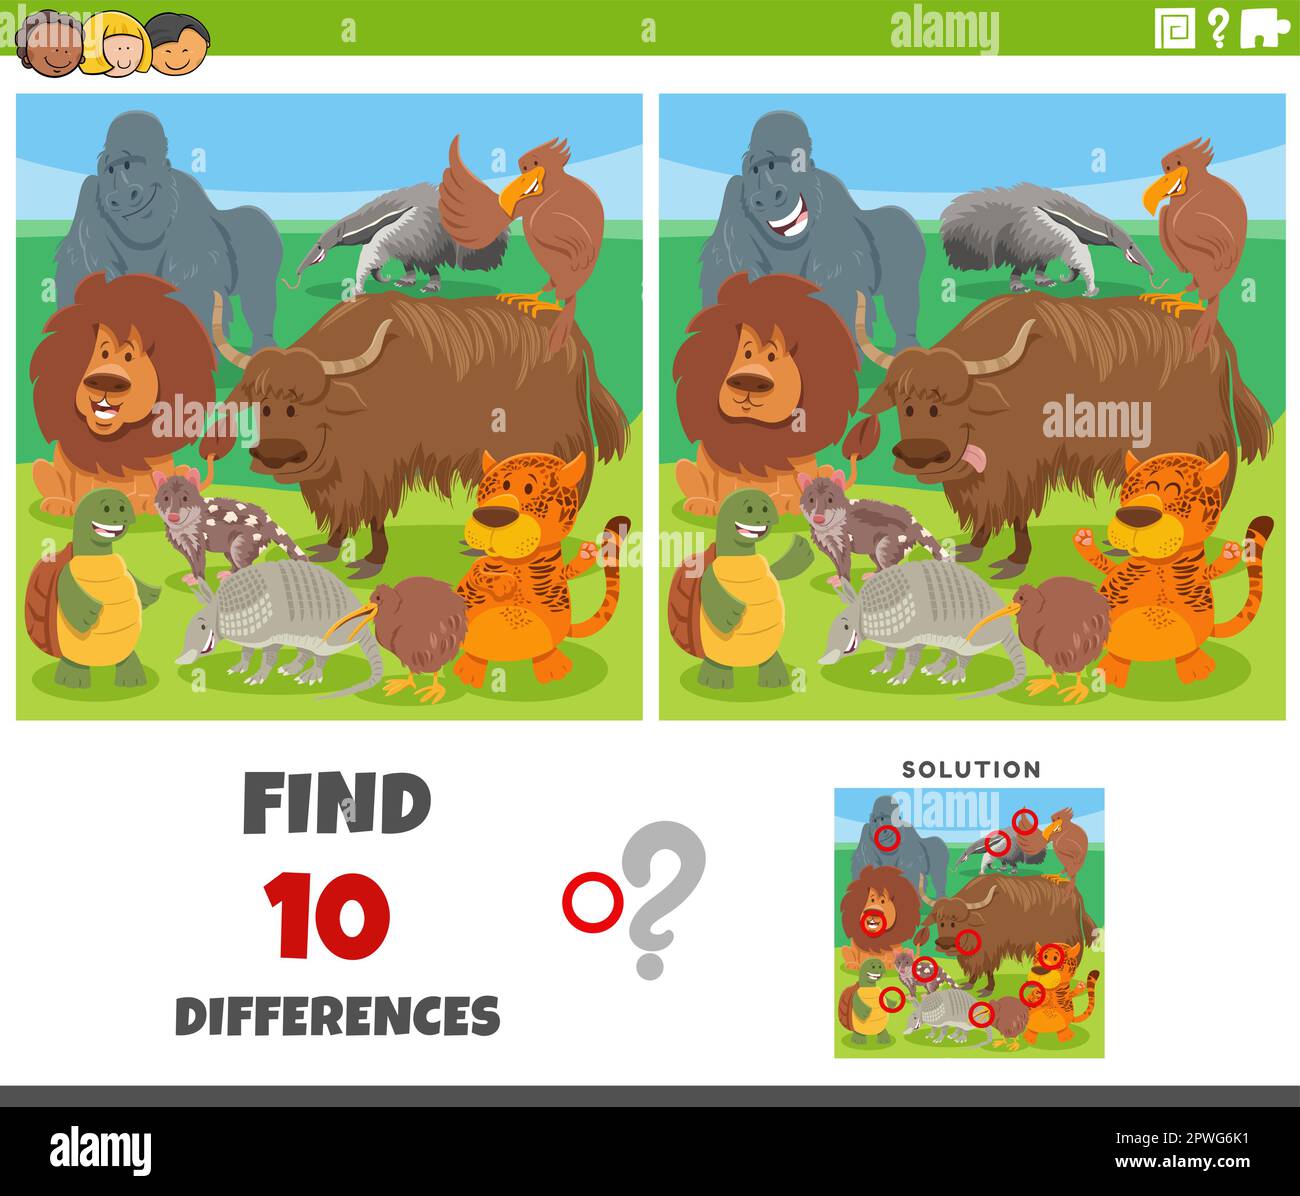 Dessin animé illustration de trouver les différences entre les images jeu éducatif avec les personnages animaux sauvages drôles Illustration de Vecteur